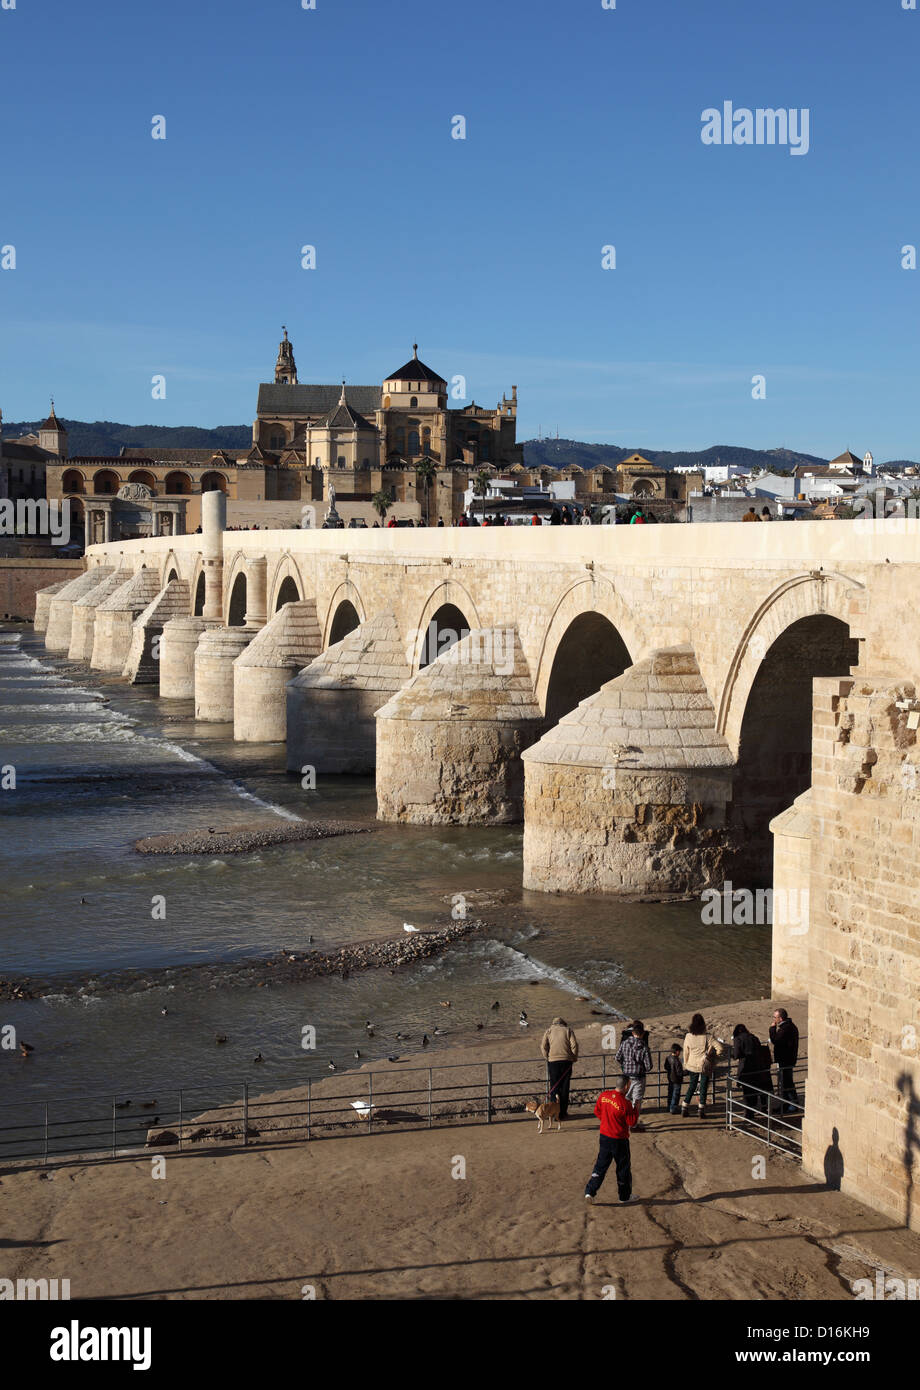 Le pont romain avec le Cathedral-Mosque de Cordoue en arrière-plan. Andalousie, Espagne Banque D'Images